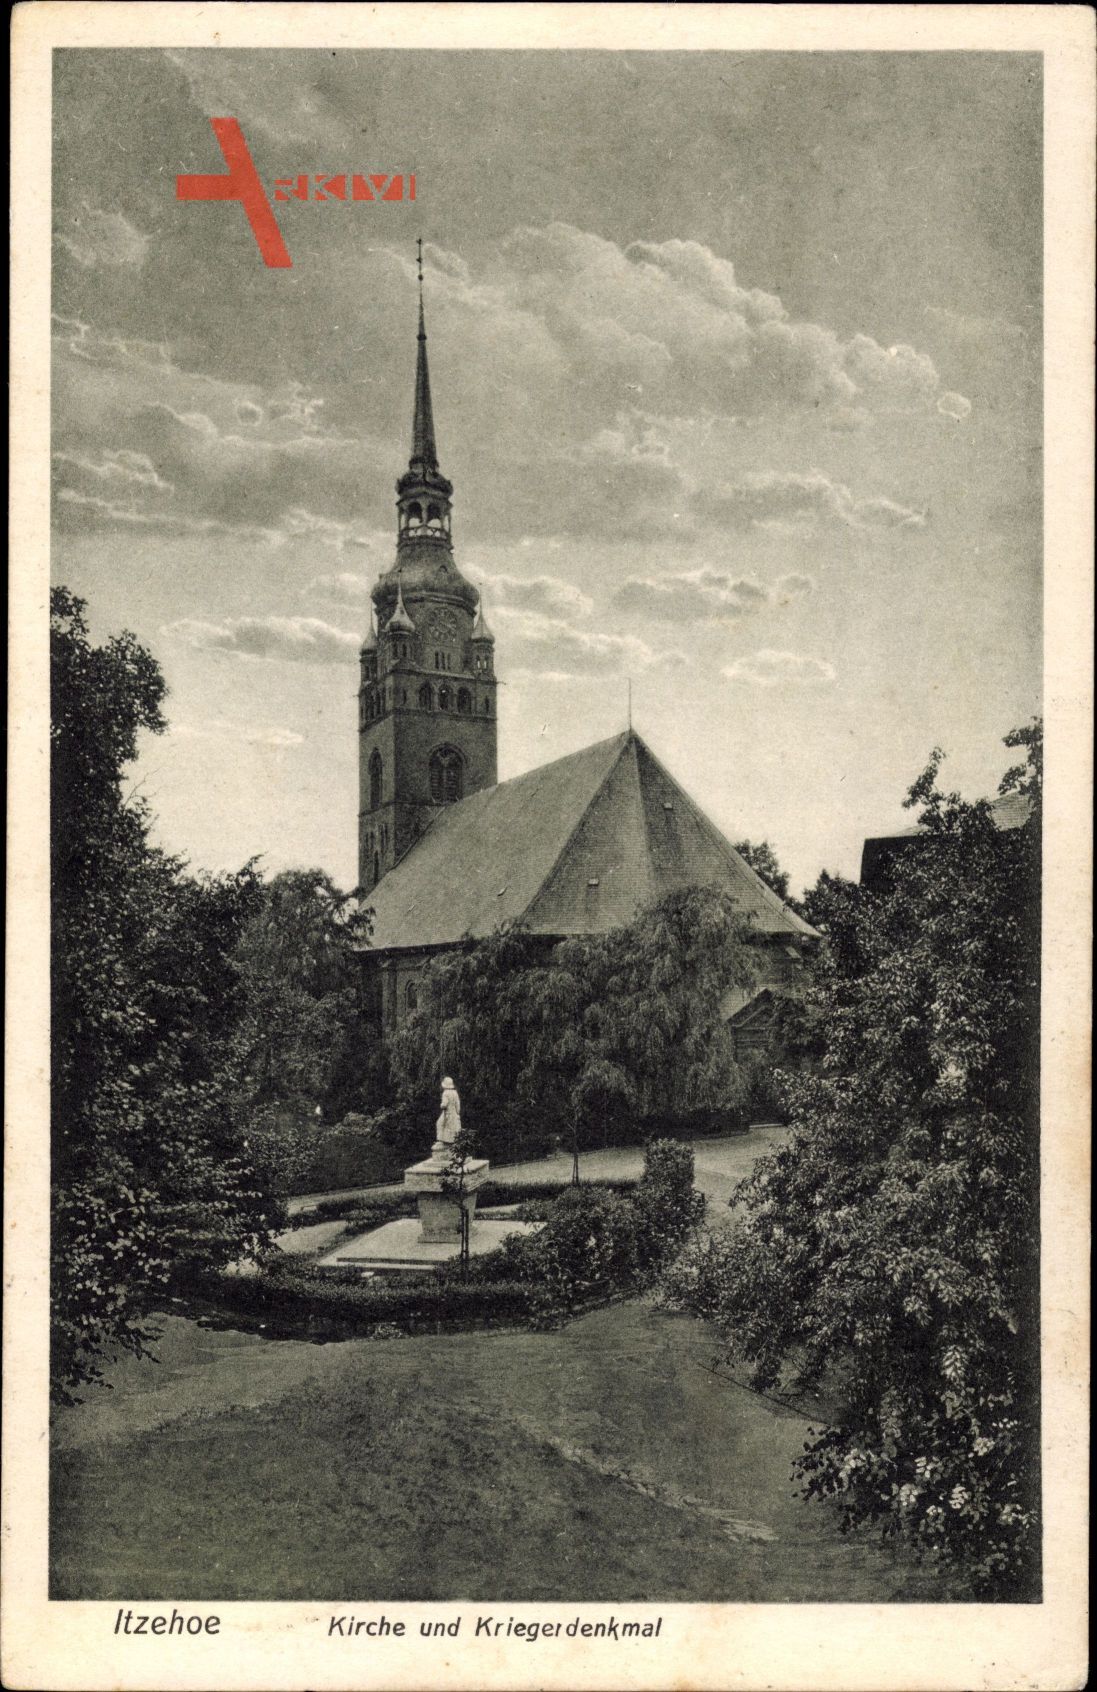 Itzehoe in Schleswig Holstein, Kirche und Kriegerdenkmal